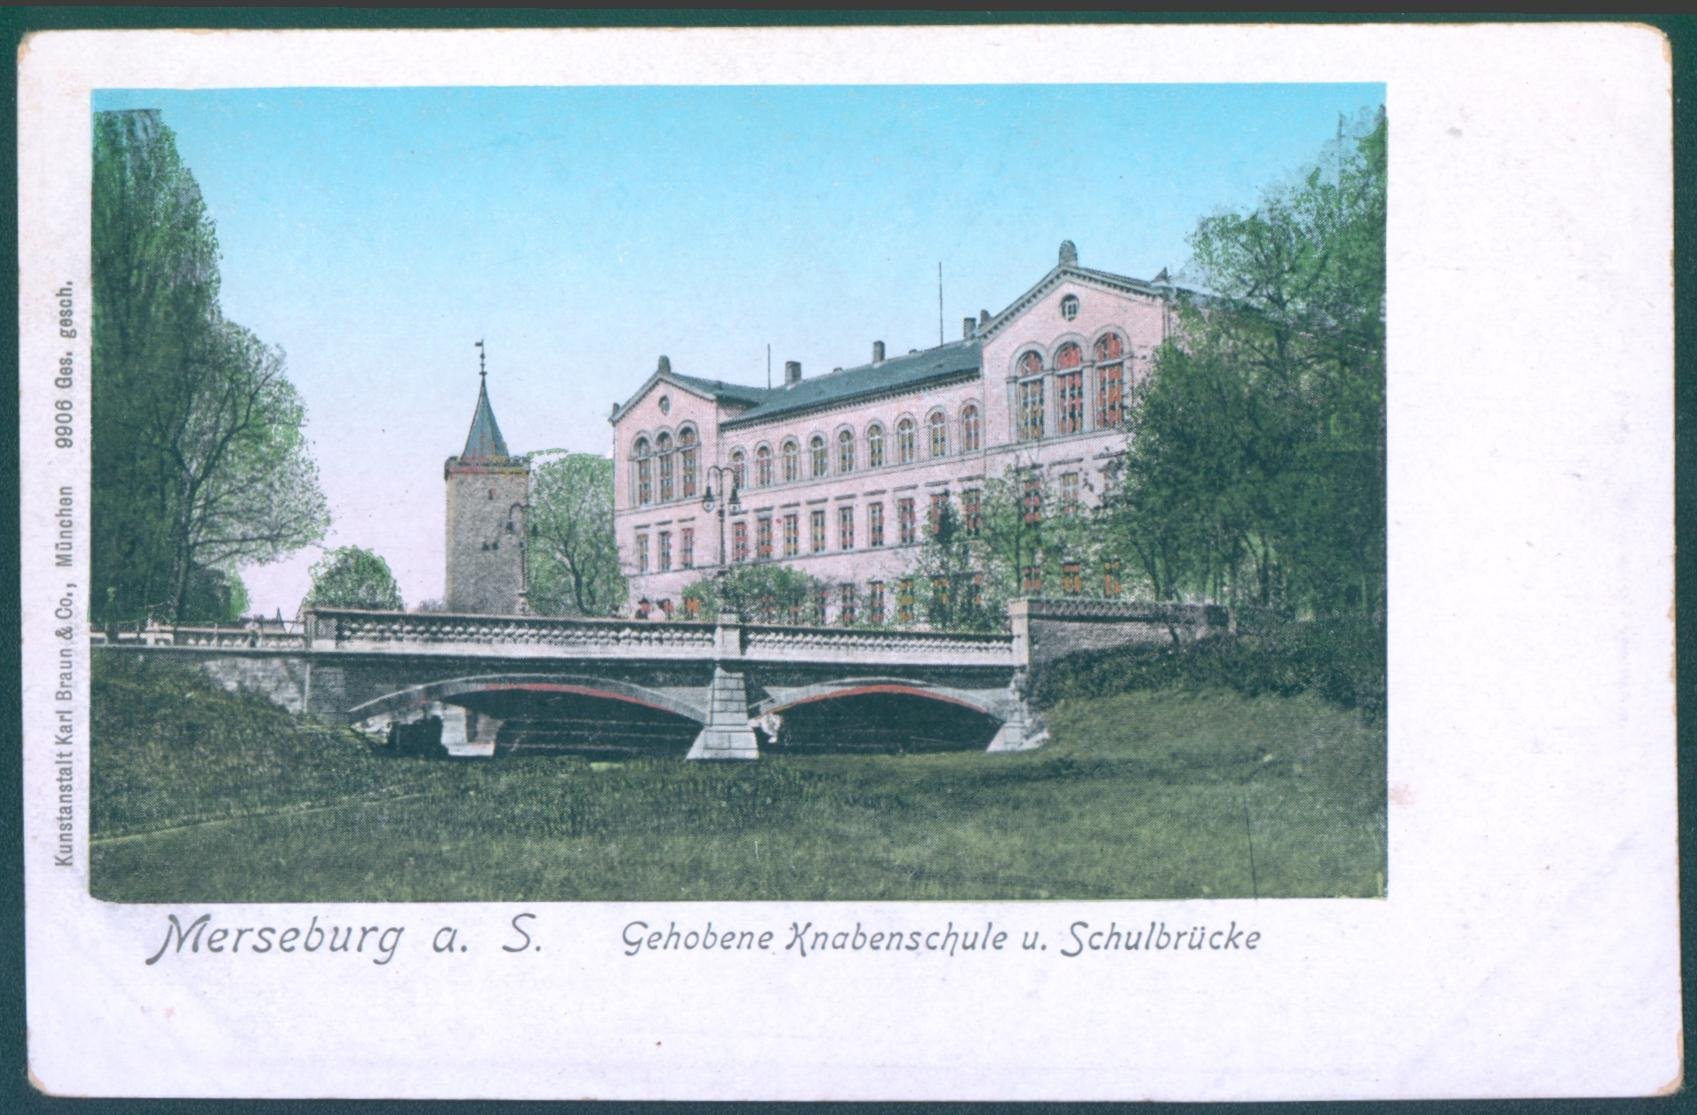 Merseburg, Gehobene Knabenschule und Schulbrücke (Kulturhistorisches Museum Schloss Merseburg CC BY-NC-SA)